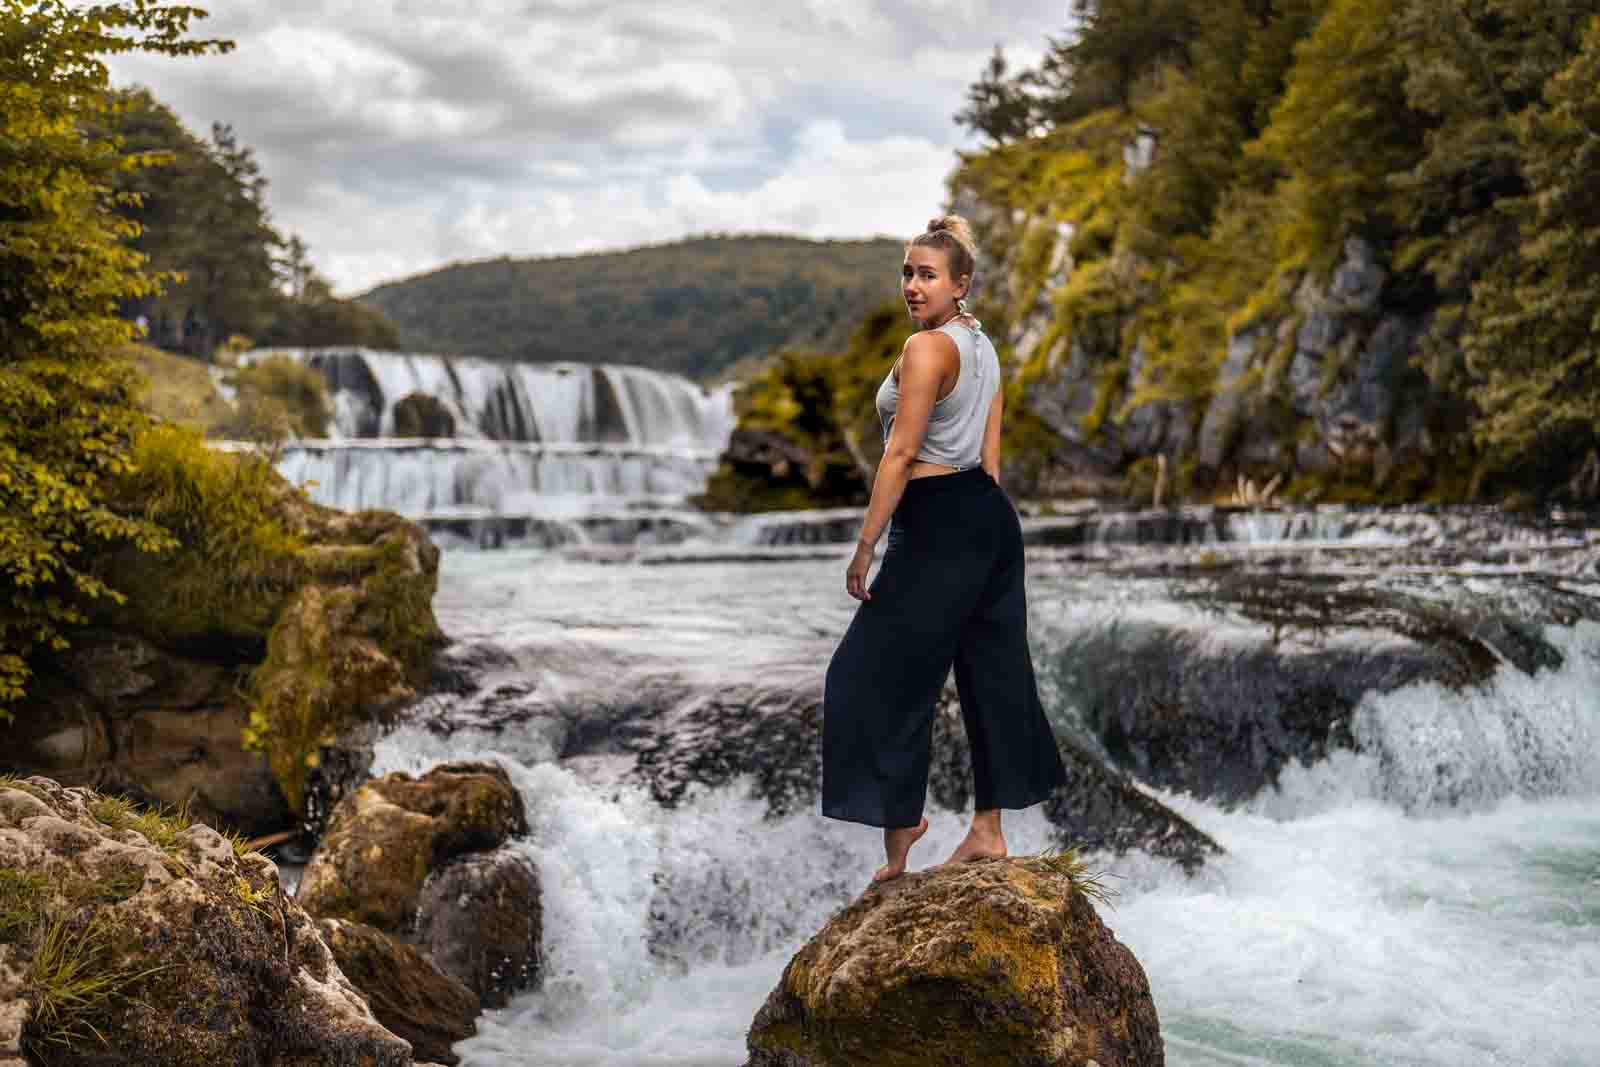 Outdoor-Ganzkörperportrait: Frau steht auf einem Stein im Fluss mit Wasserfall im Hintergrund.